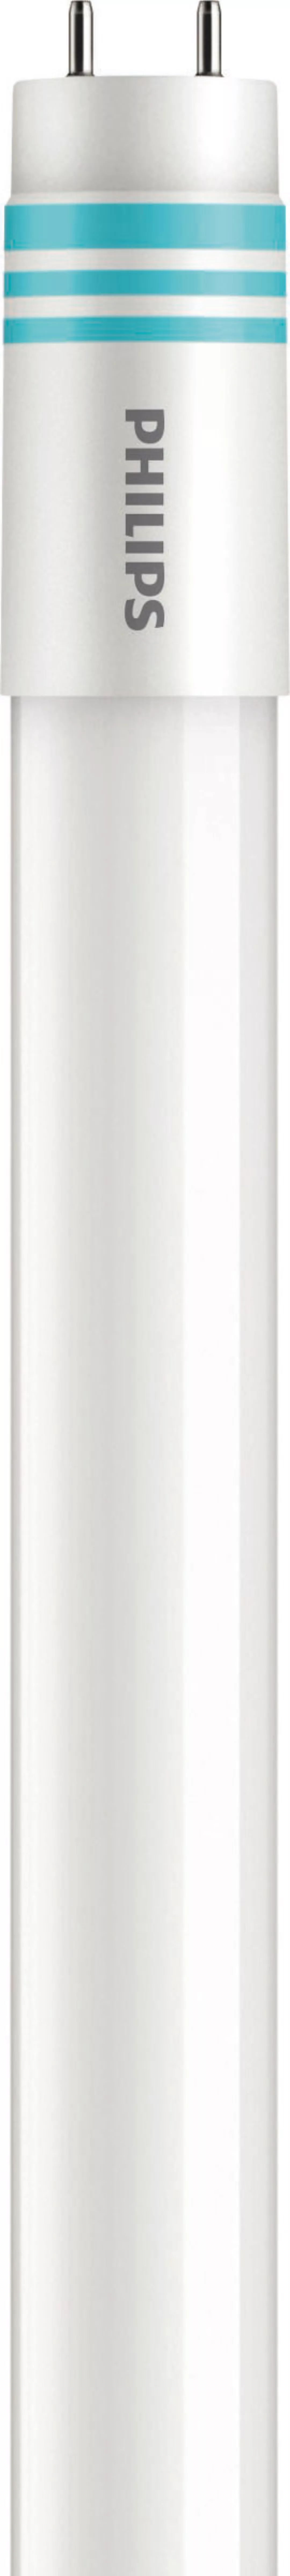 Philips Lighting LED-Tube T8 universal G13, 865, 1200mm MAS LEDtube#3167200 günstig online kaufen